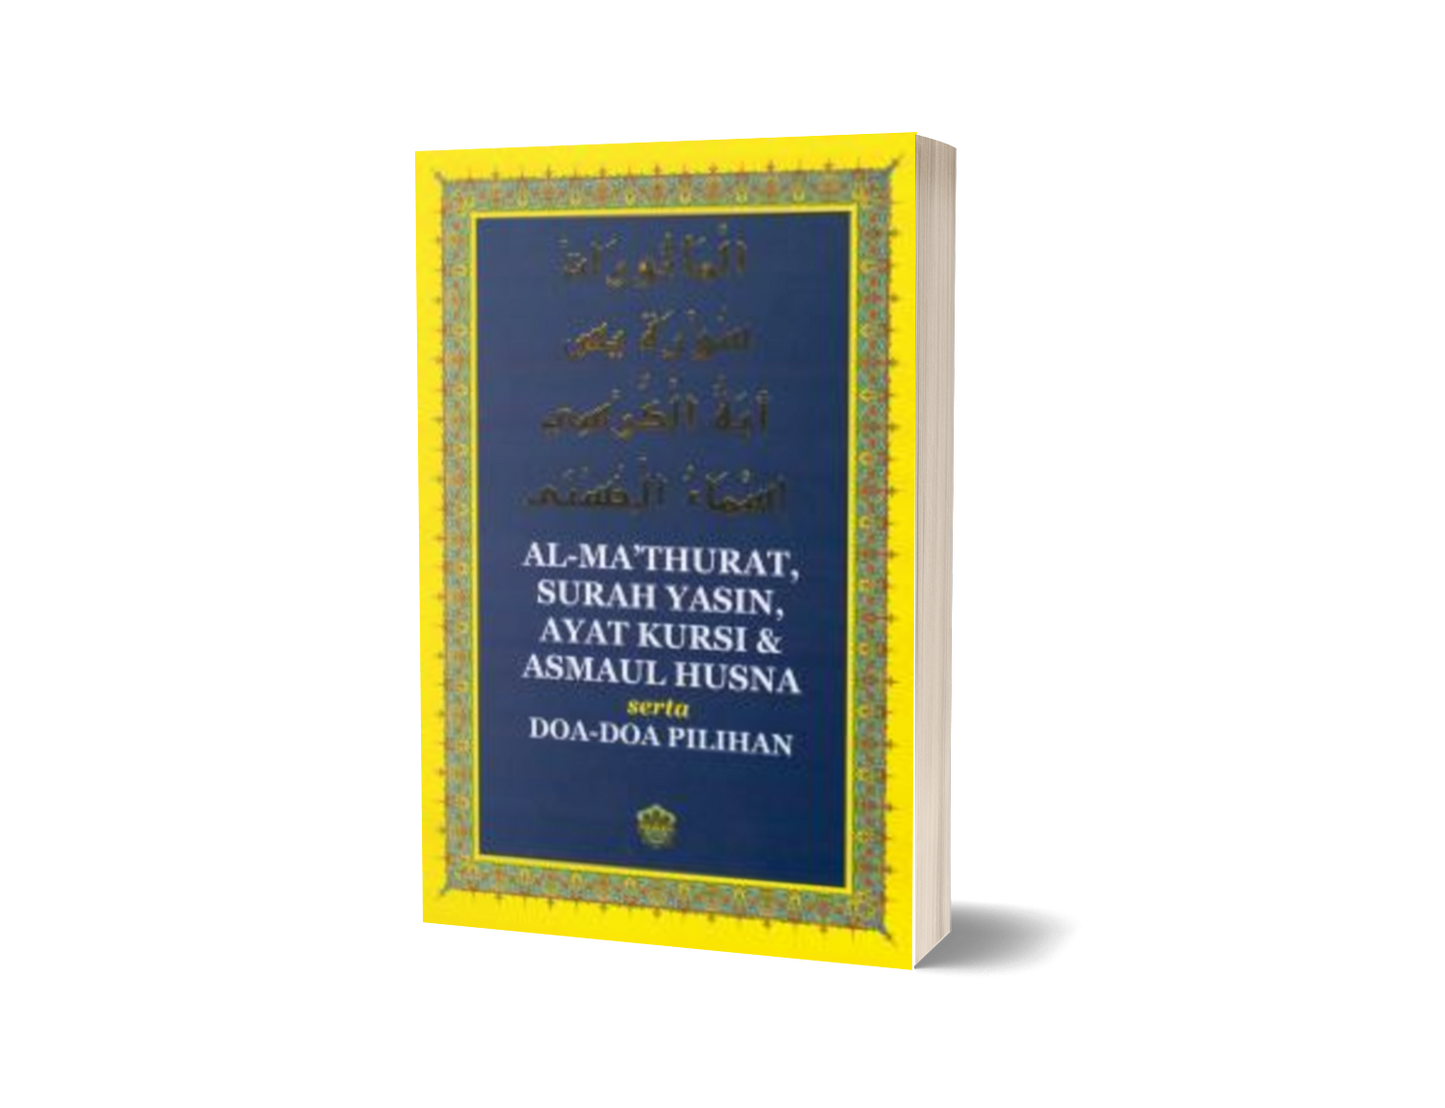 Al-Mathurat, Surah Yasin, Ayat Kursi & Asmaul Husna (Lge)